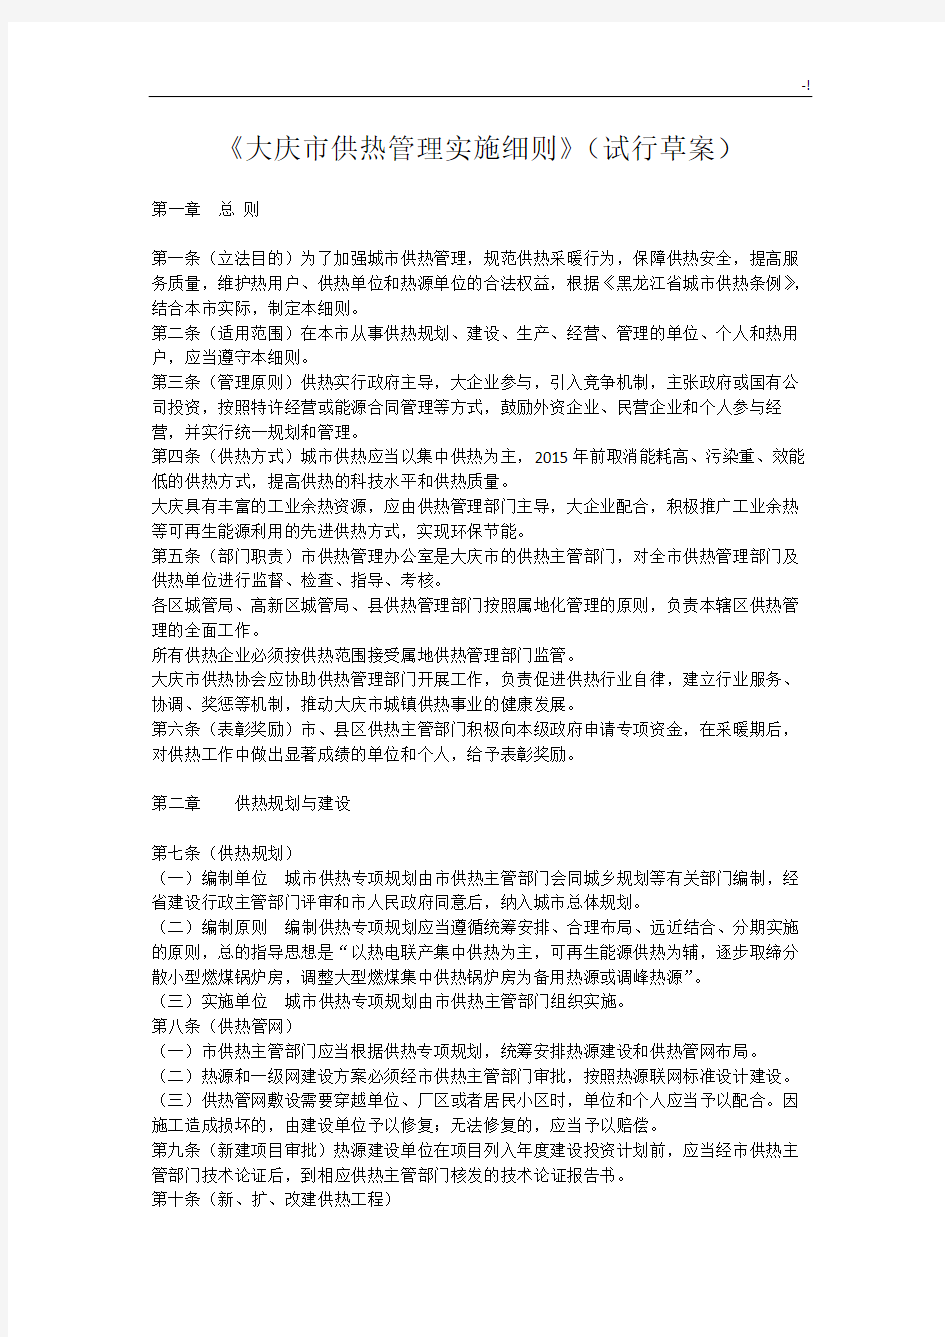 大庆市供热管理方案计划实施详细介绍